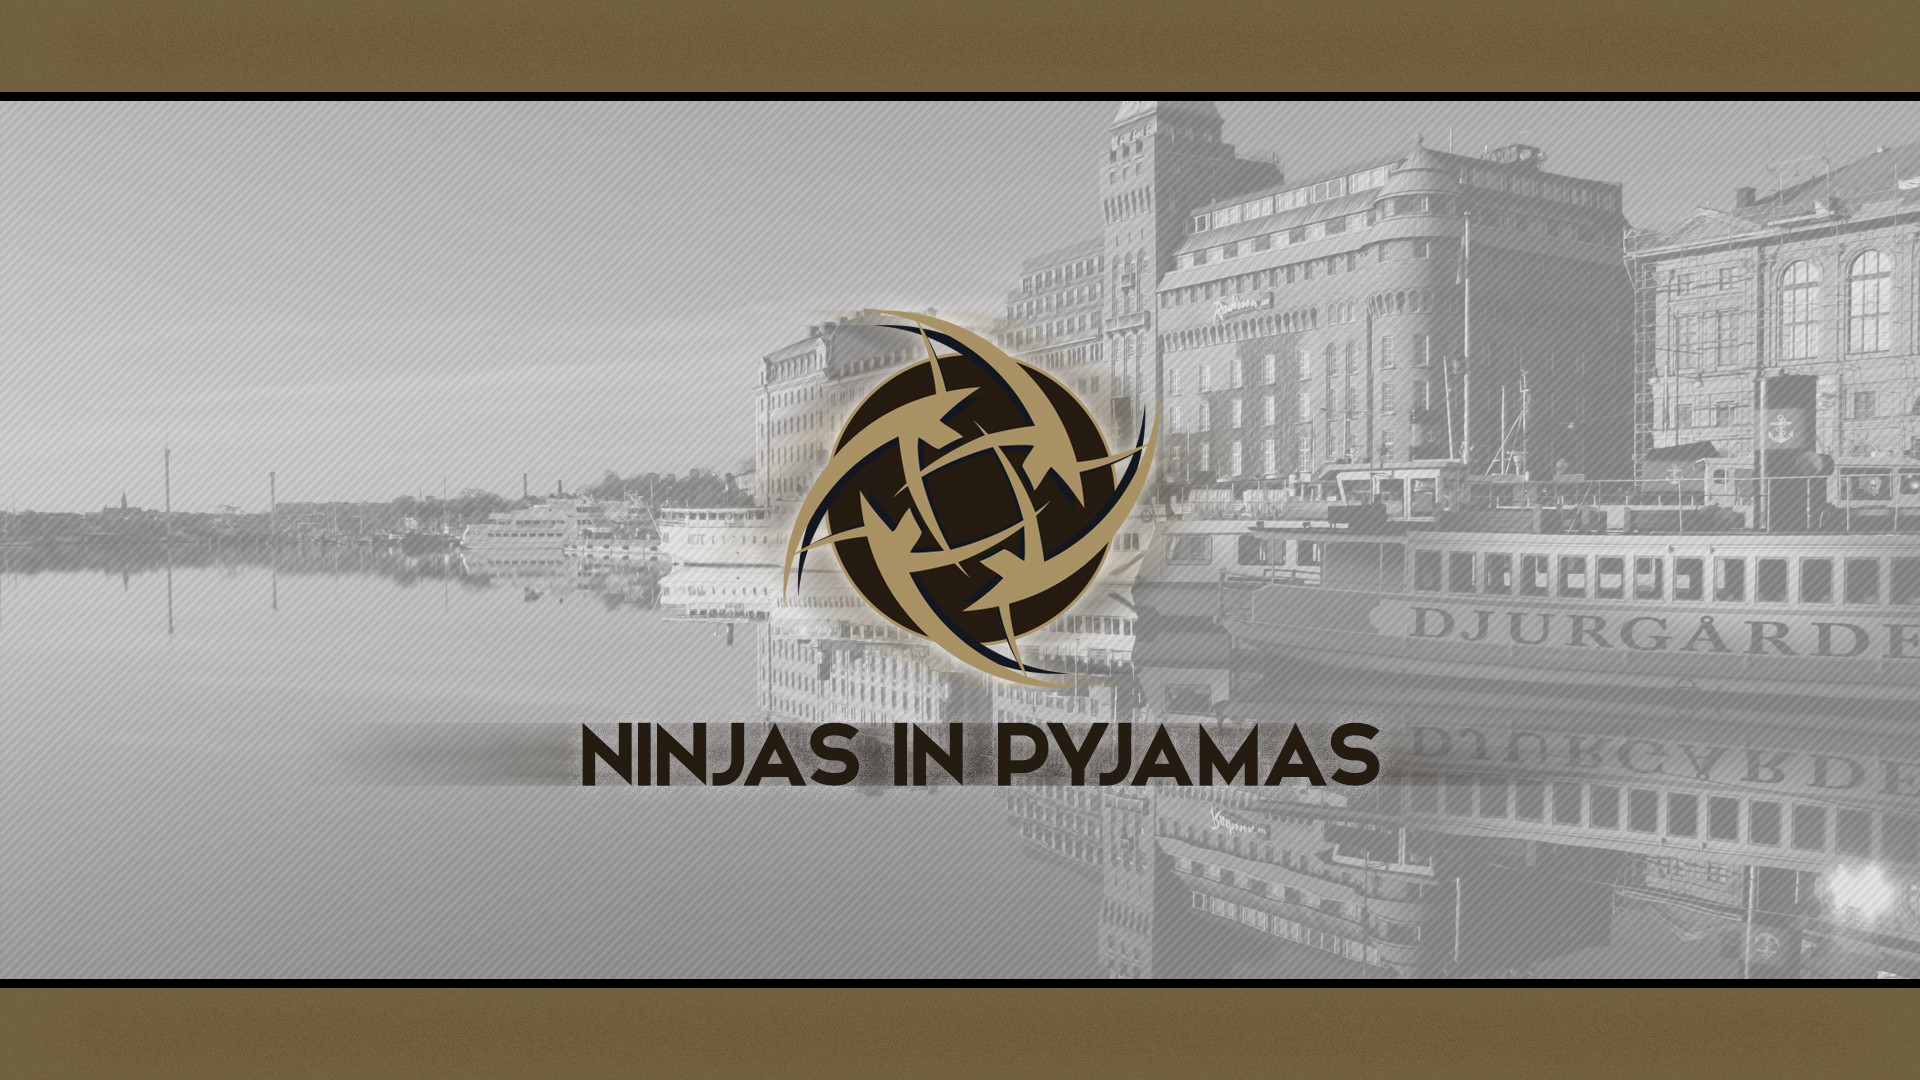 ninjas in pyjamas wallpaper,text,logo,font,design,stock photography